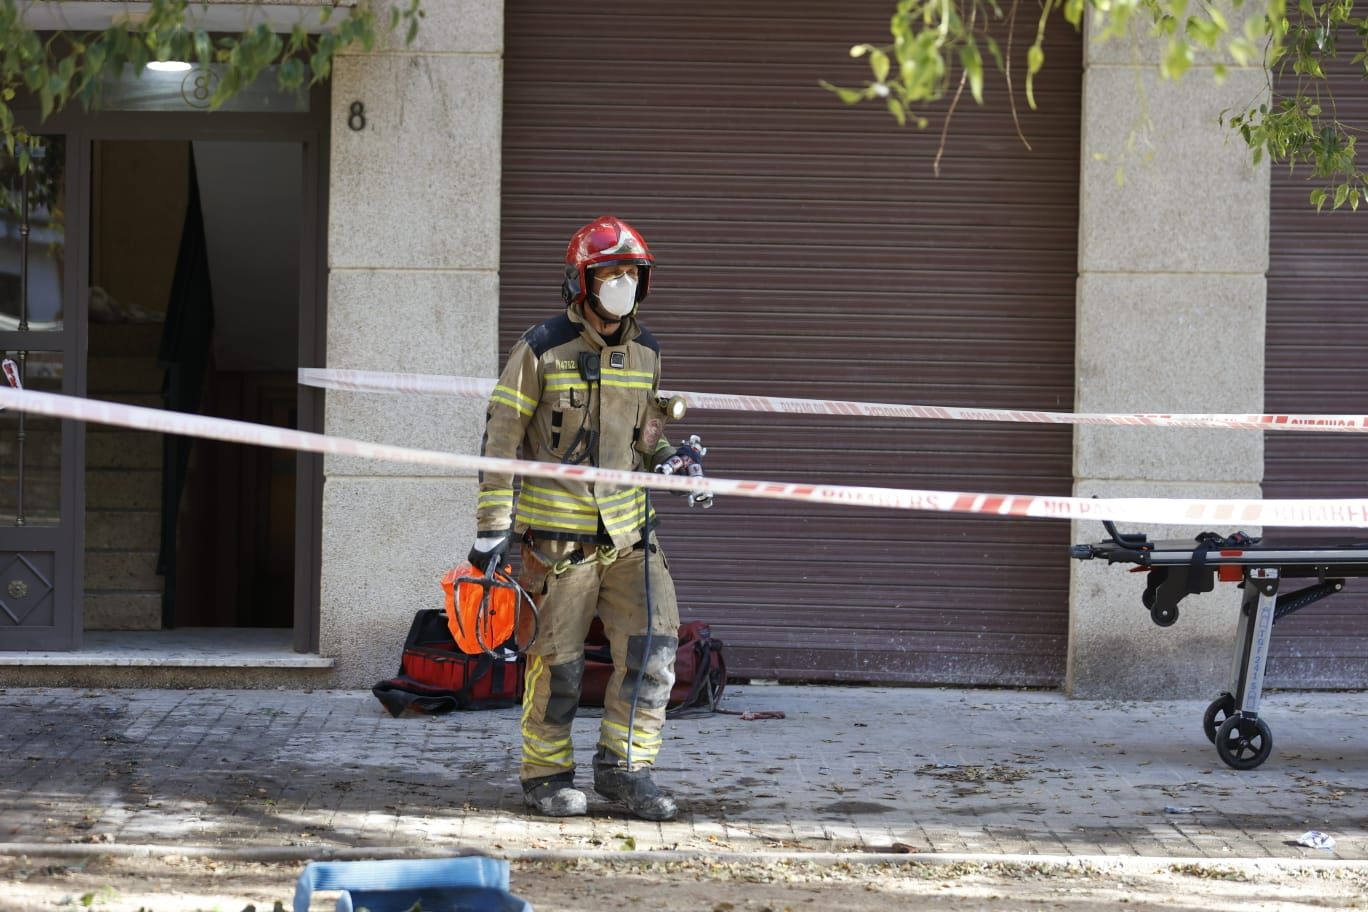 Mueren tres personas en un incendio en La Fuensanta